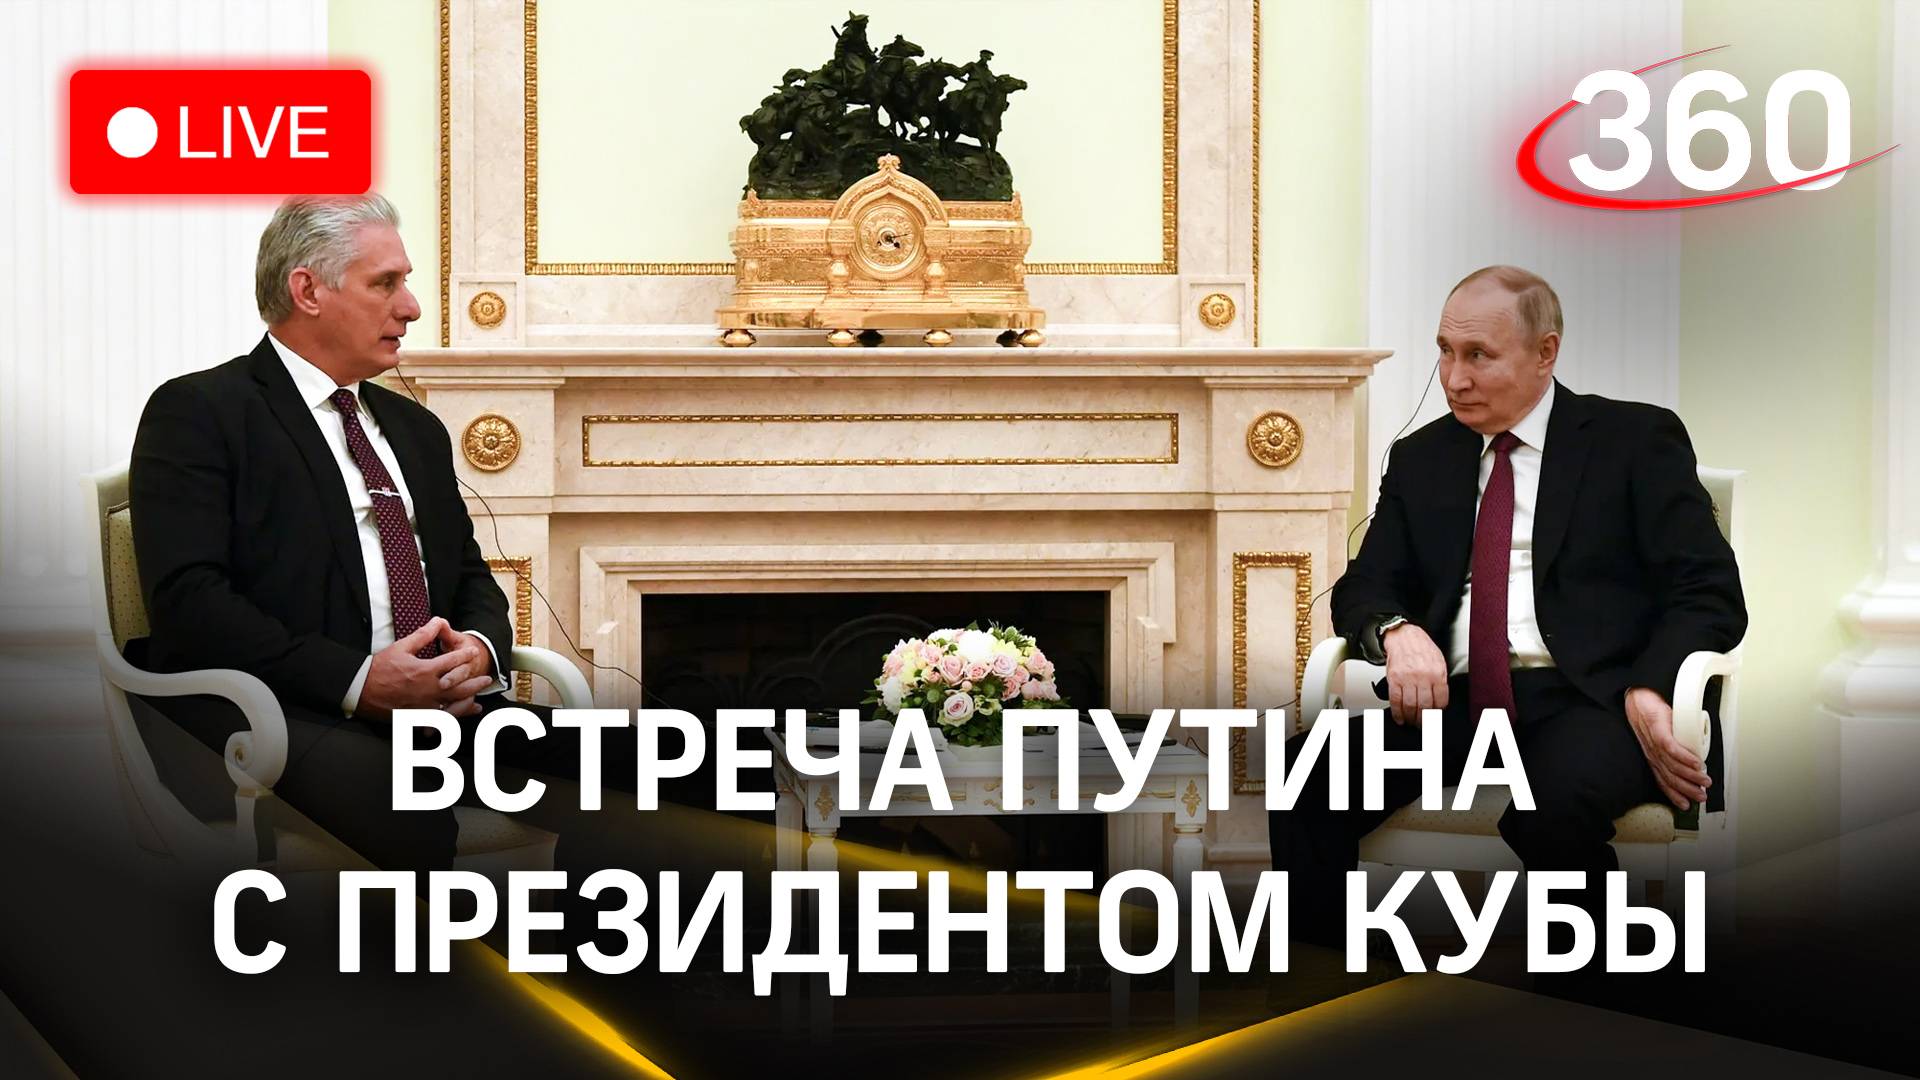 Встреча Путина с президентом Кубы | Прямая трансляция